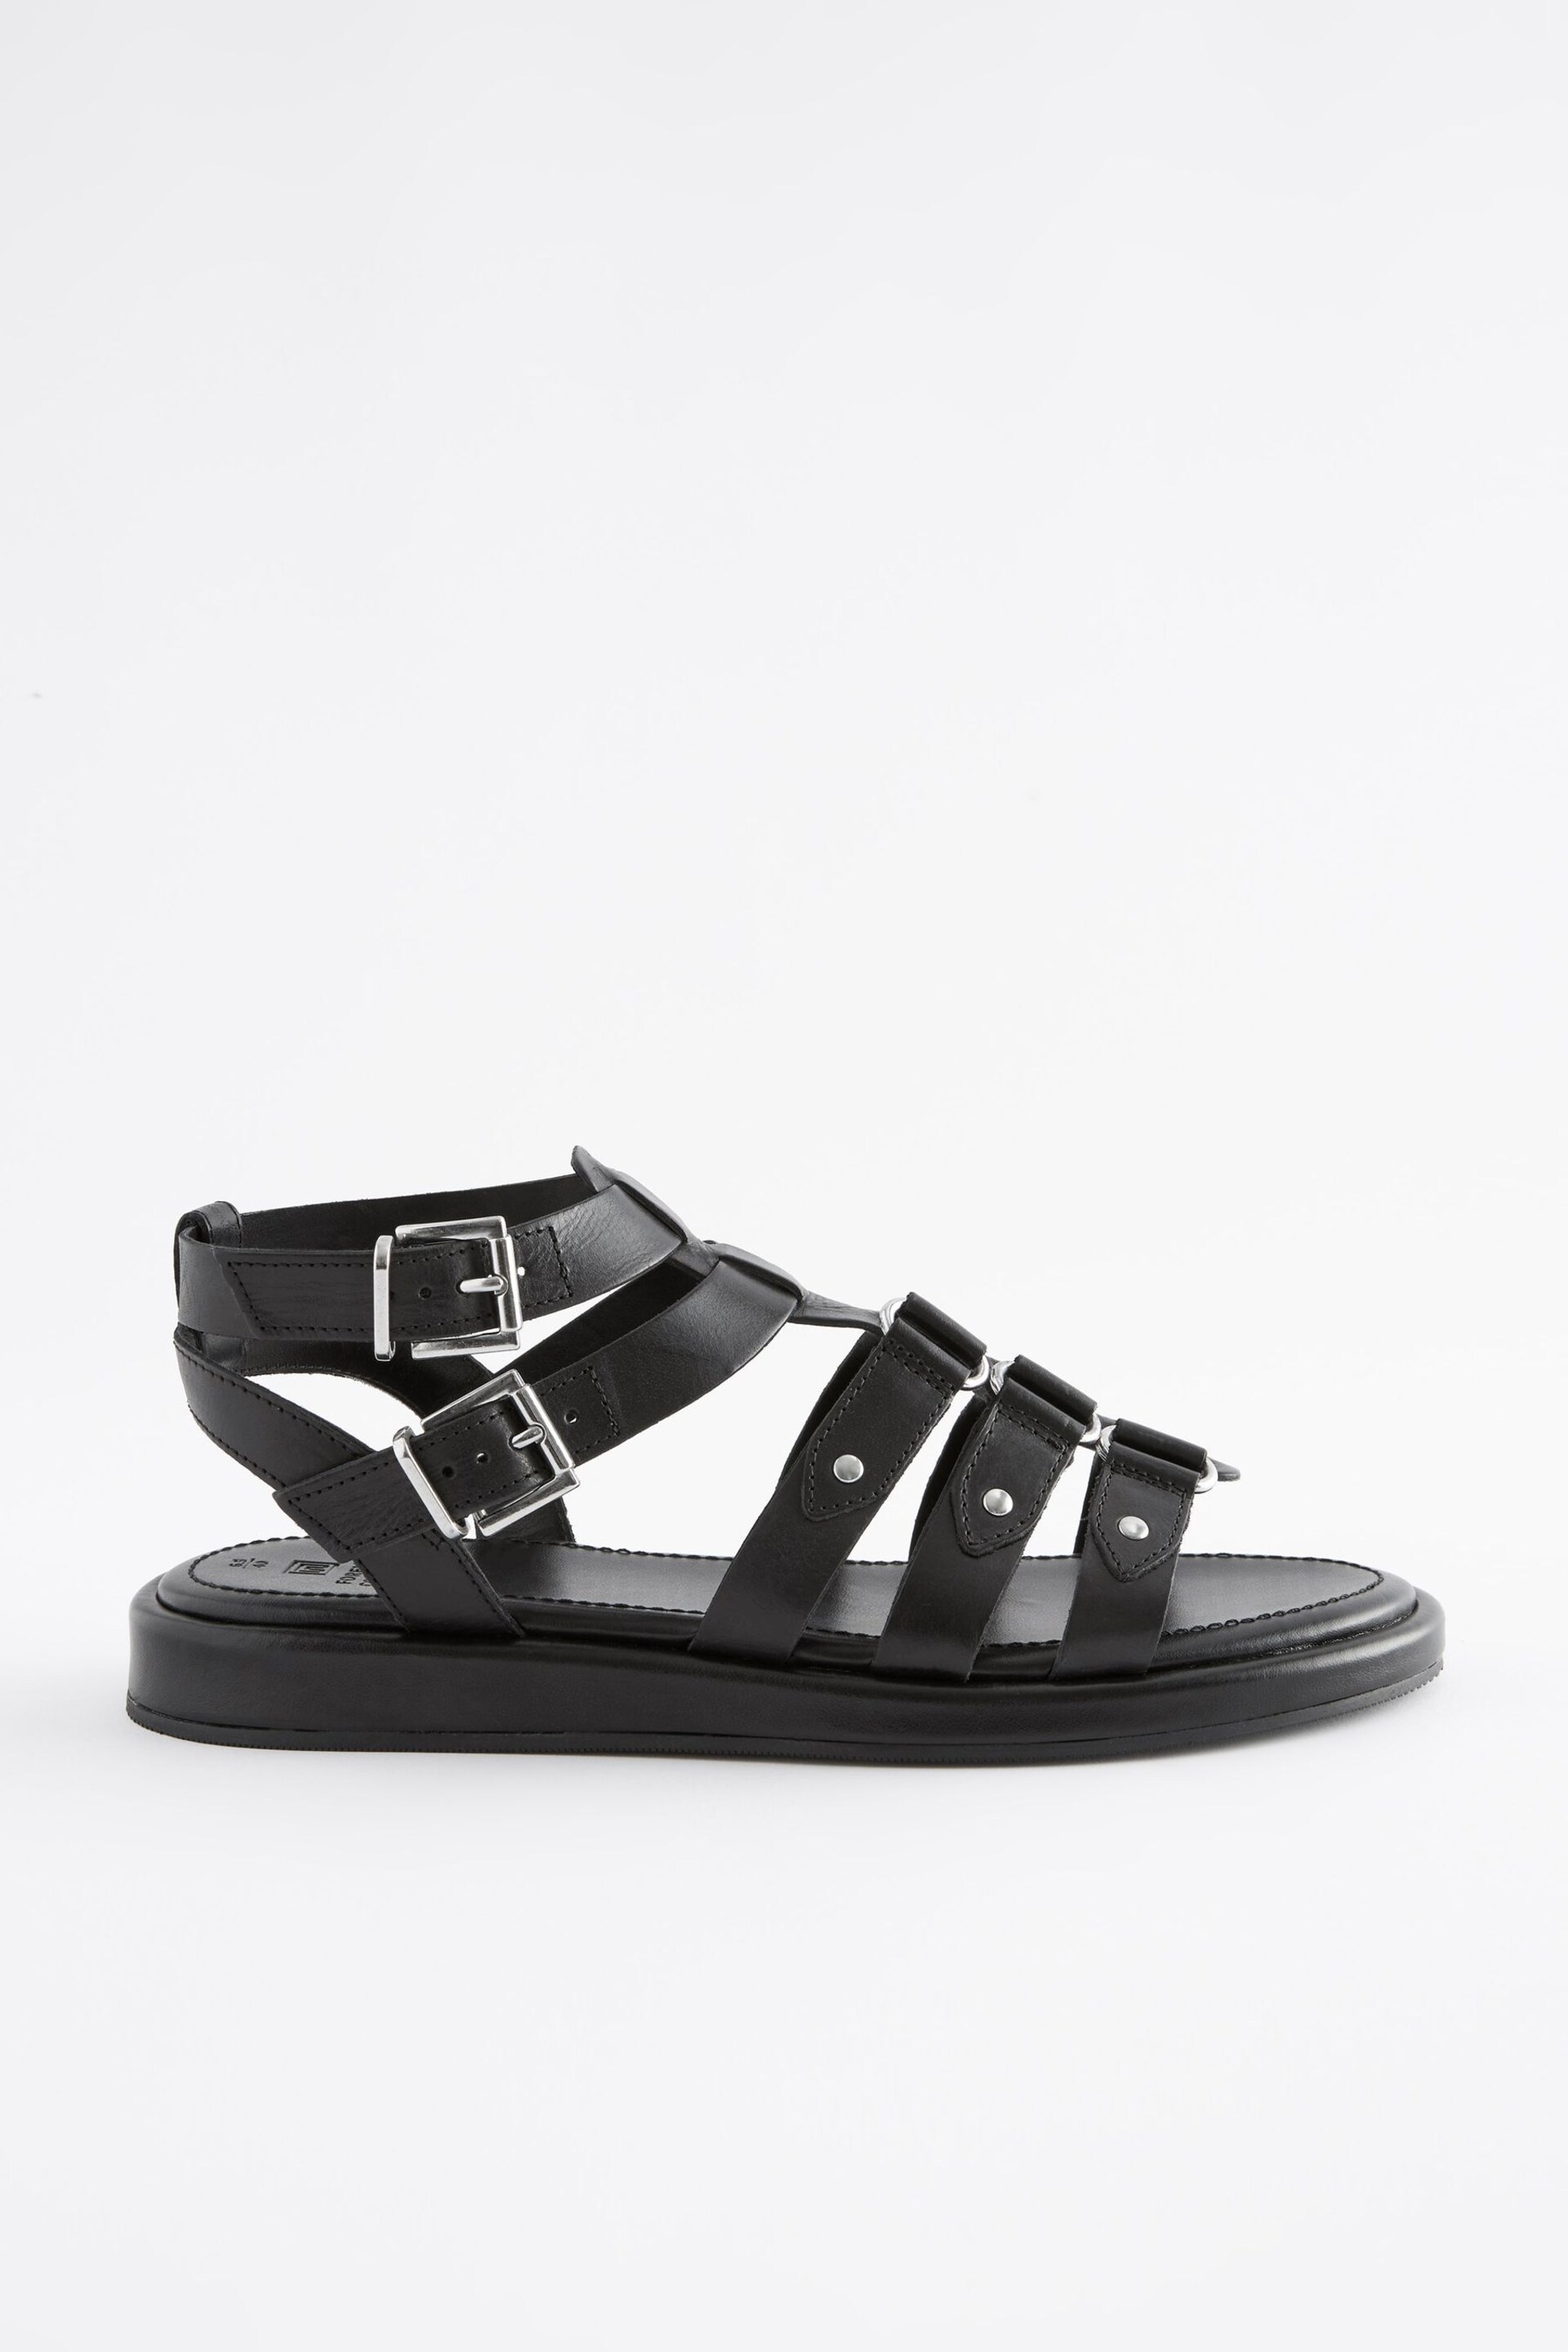 Black Regular/Wide Fit Forever Comfort® Leather Gladiator Sandals - Image 4 of 8